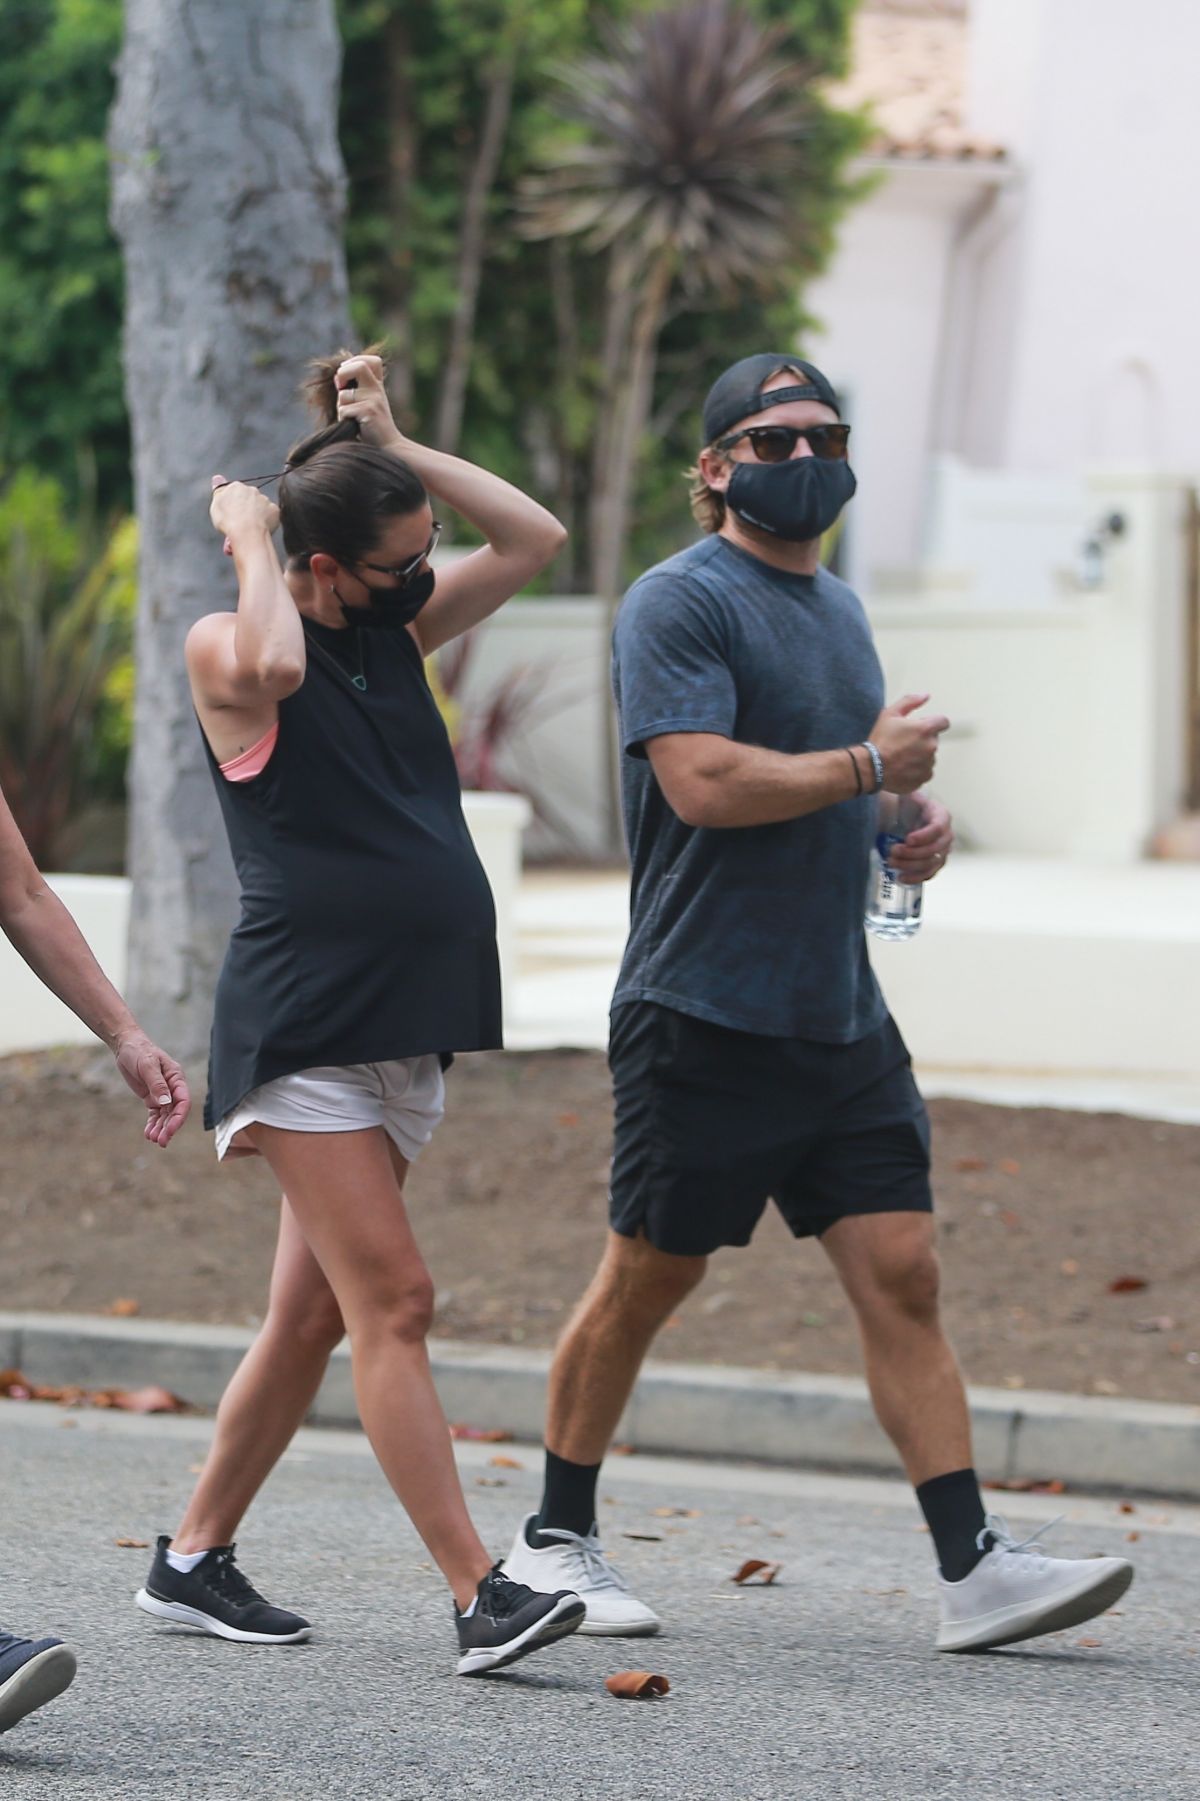 Pegnant Lea Michele Zandy Reich Out Santa Monica